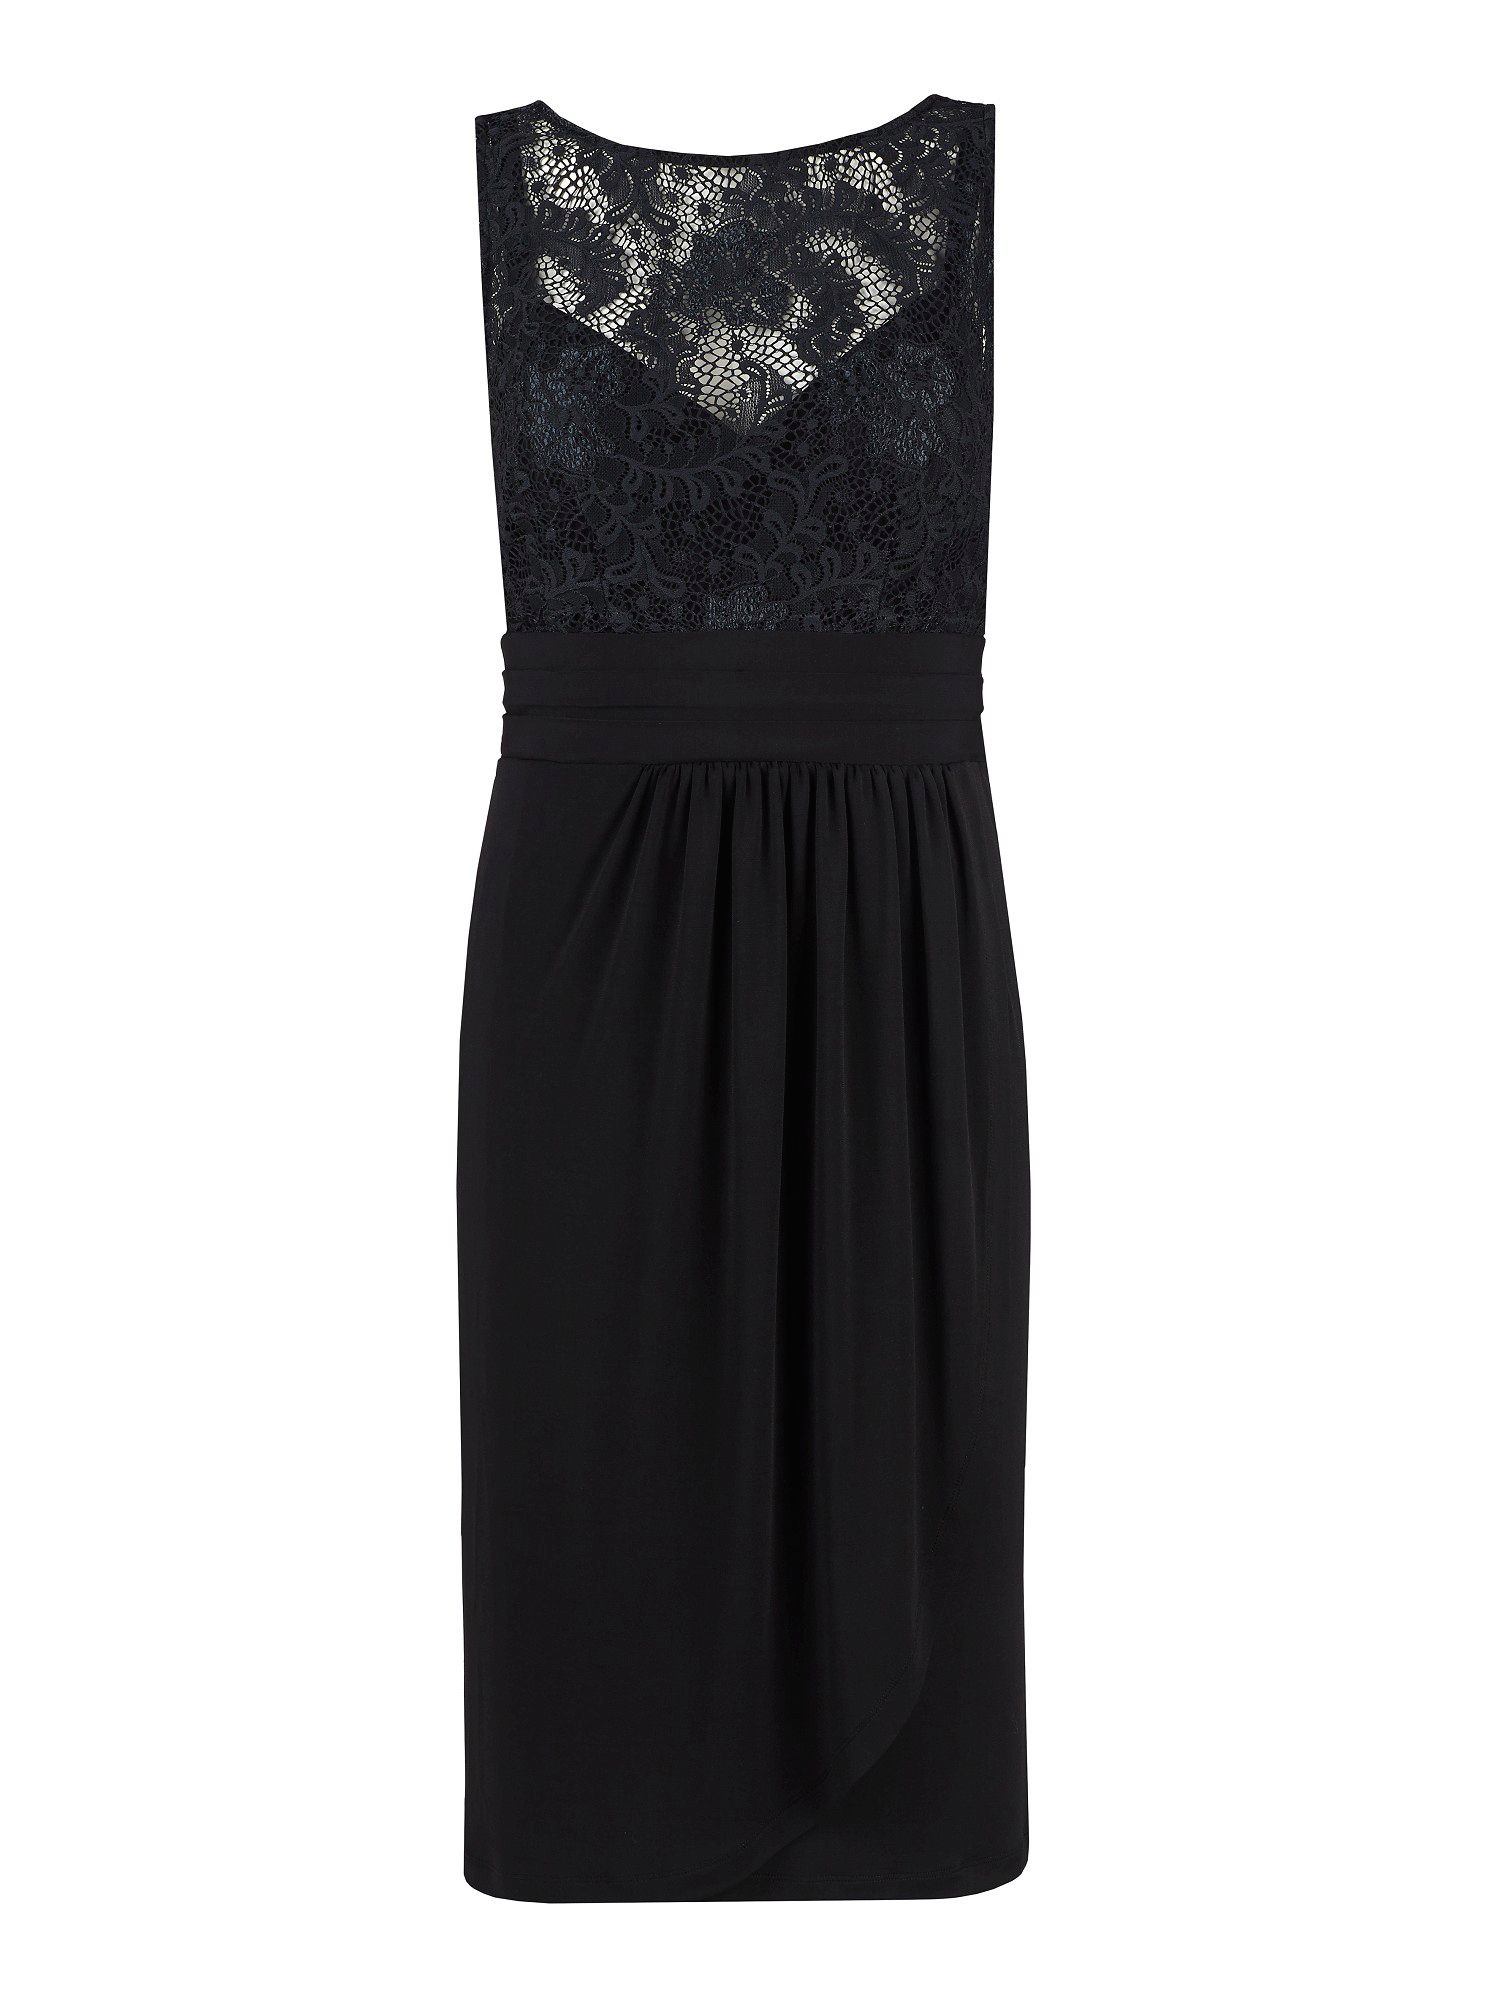 Alexon Lace Top Jersey Dress in Black | Lyst